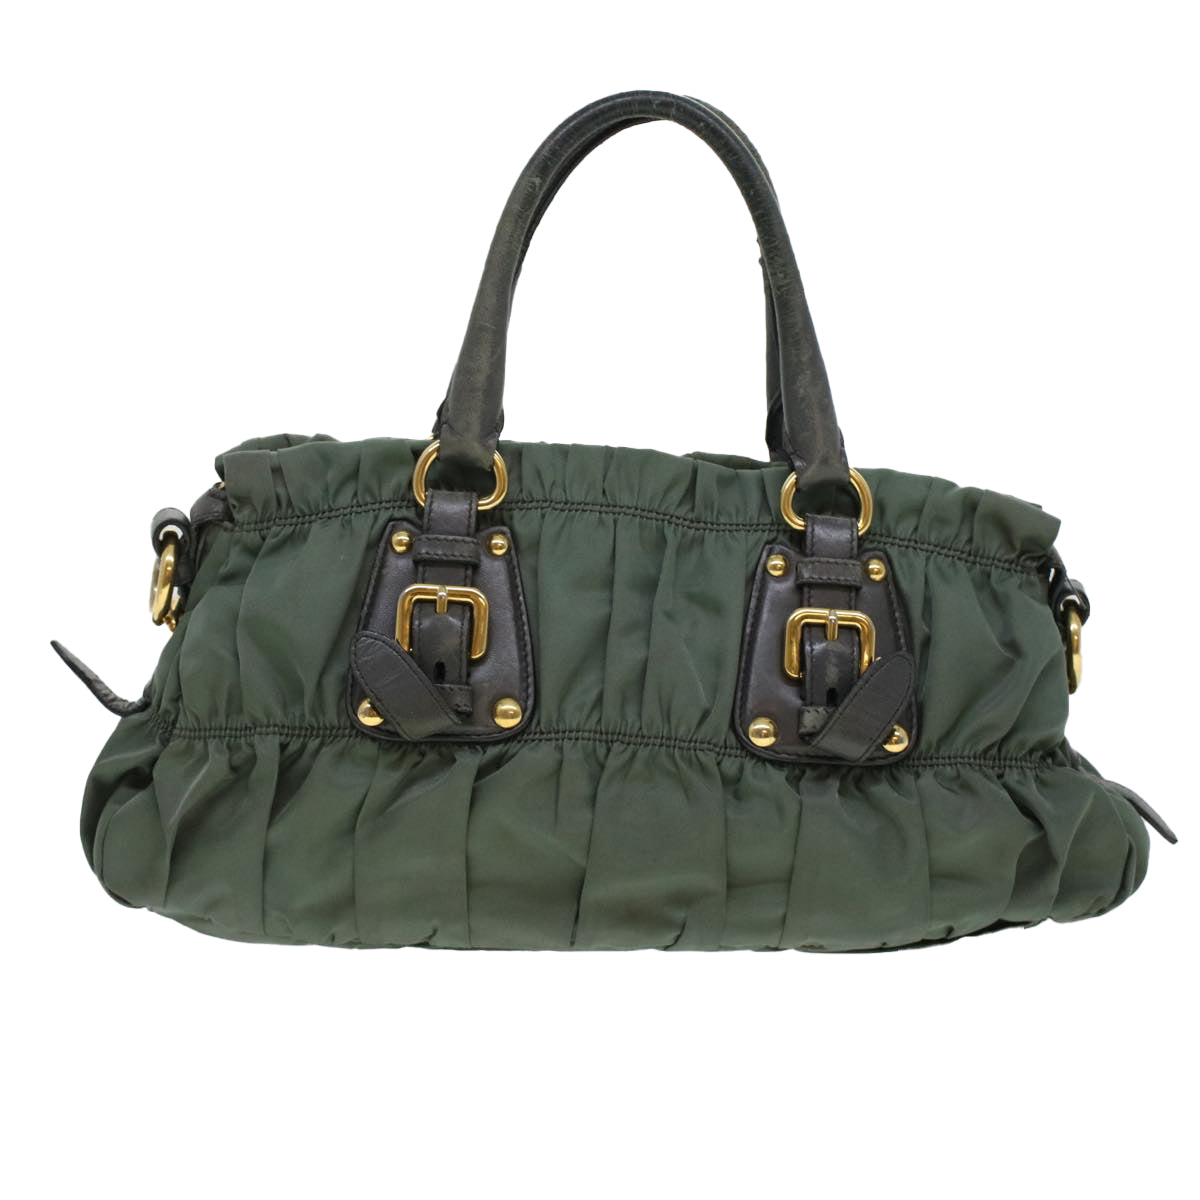 PRADA Hand Bag Nylon 2way Shoulder Bag Khaki Auth 44051 - 0